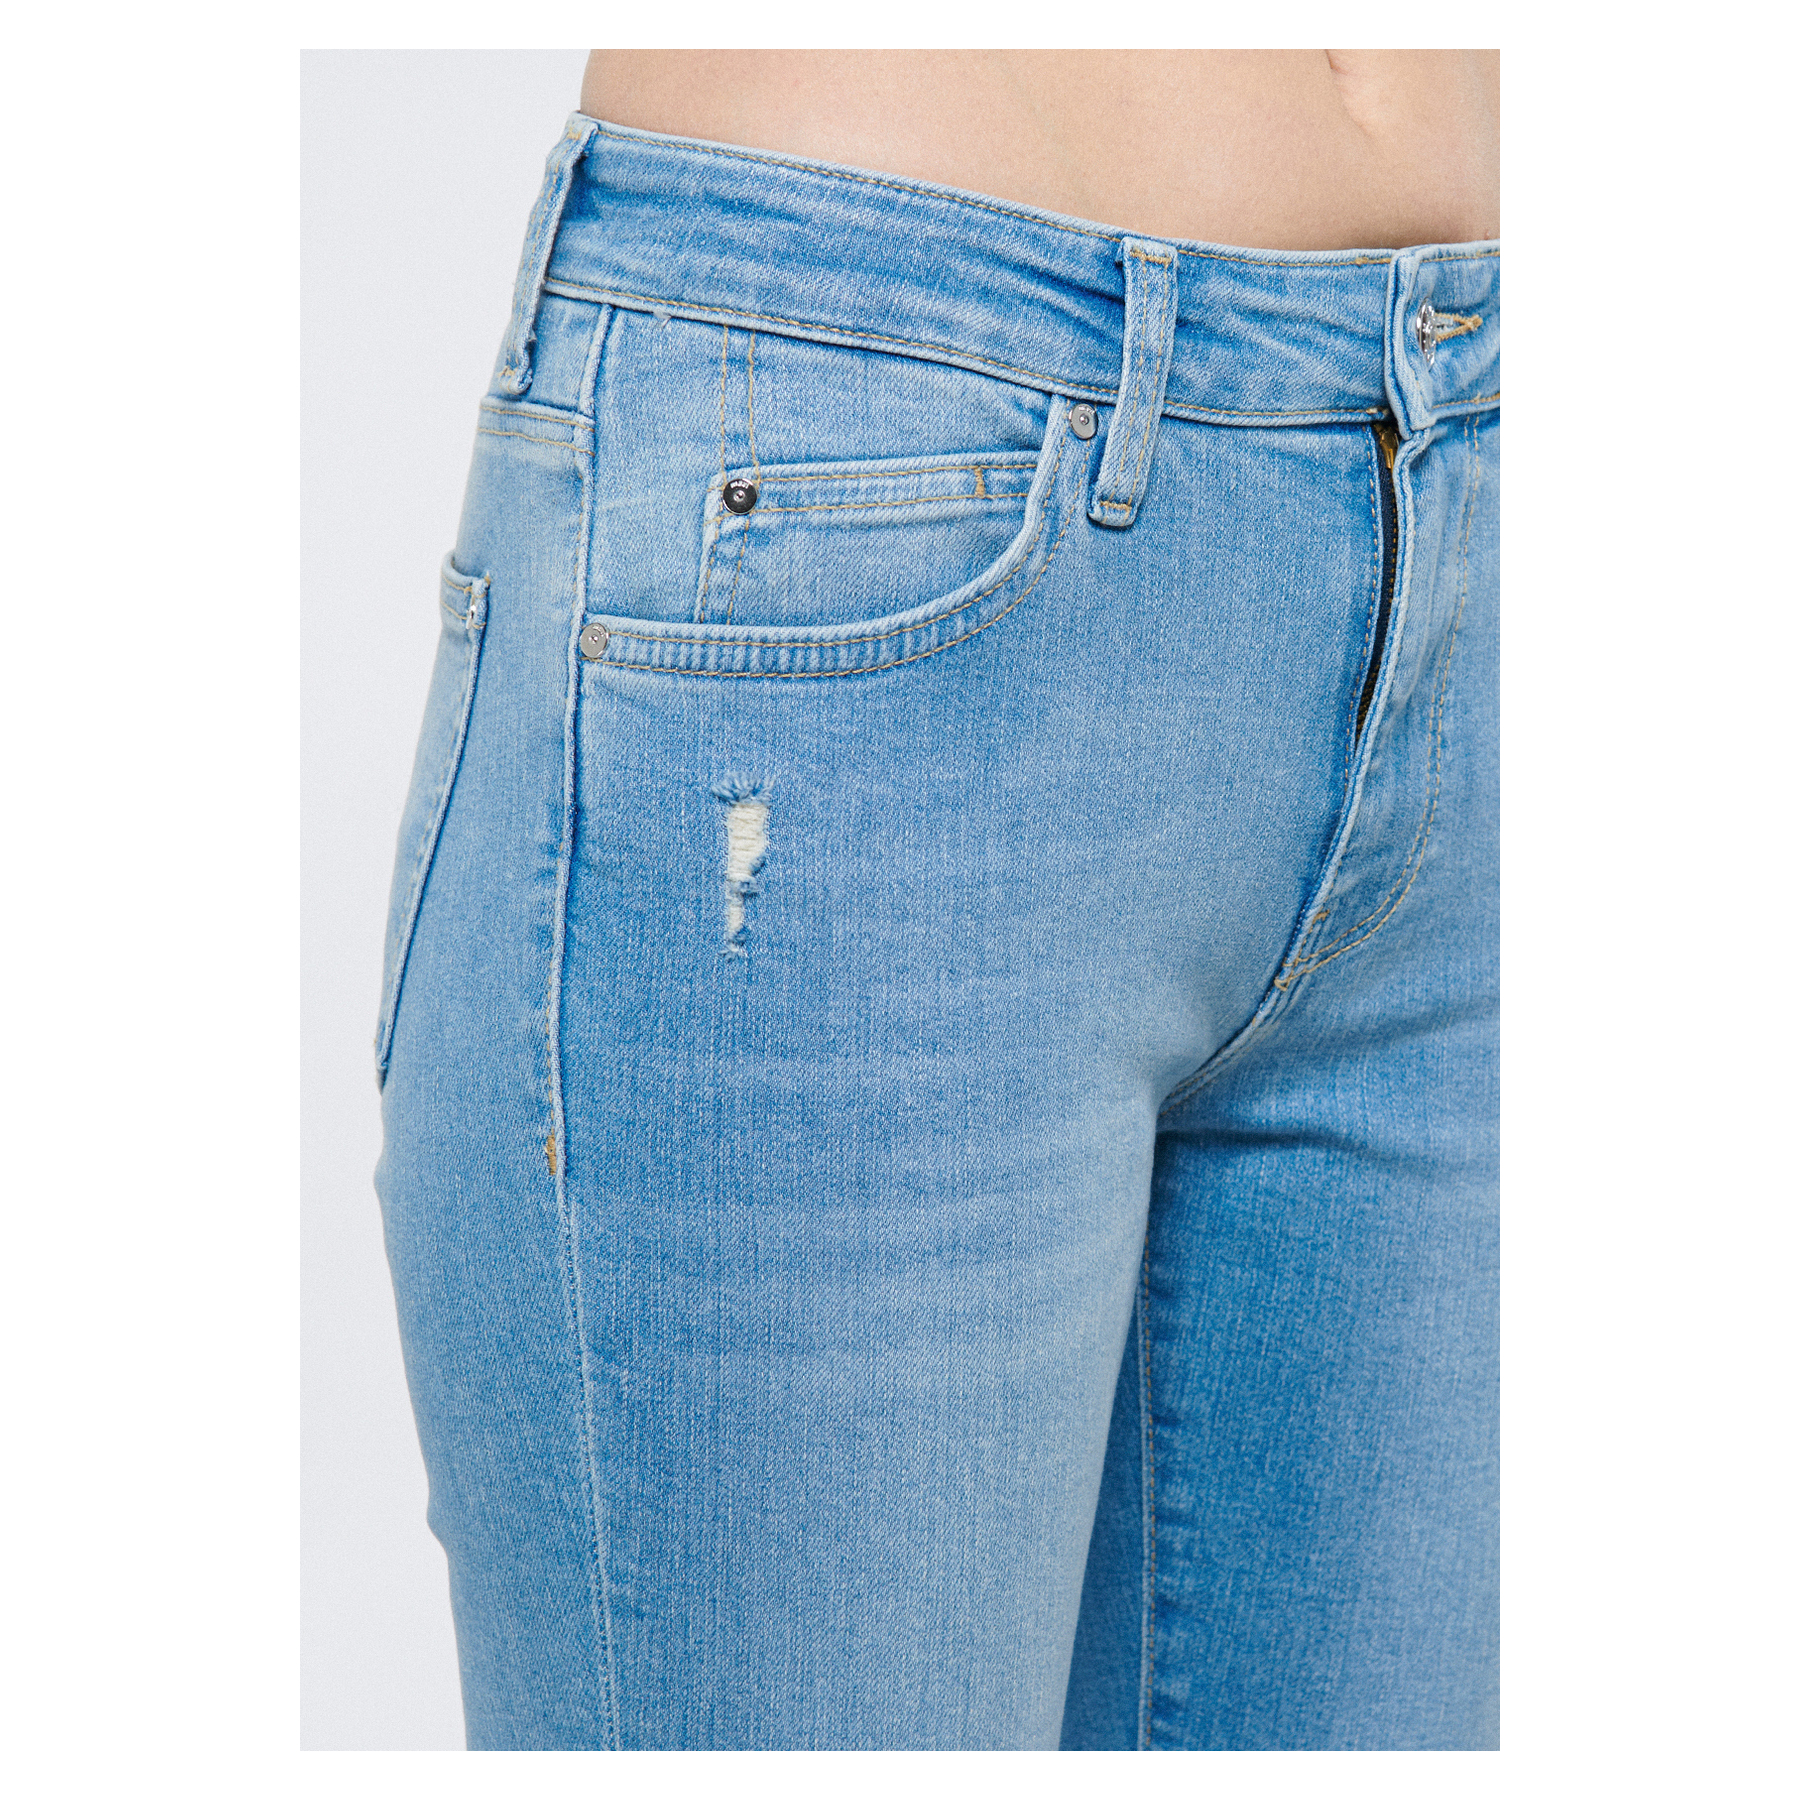 Mavi Jeans Elsa LT Blue Glam Kadın Mavi Kot Pantolon (1010039-81285)